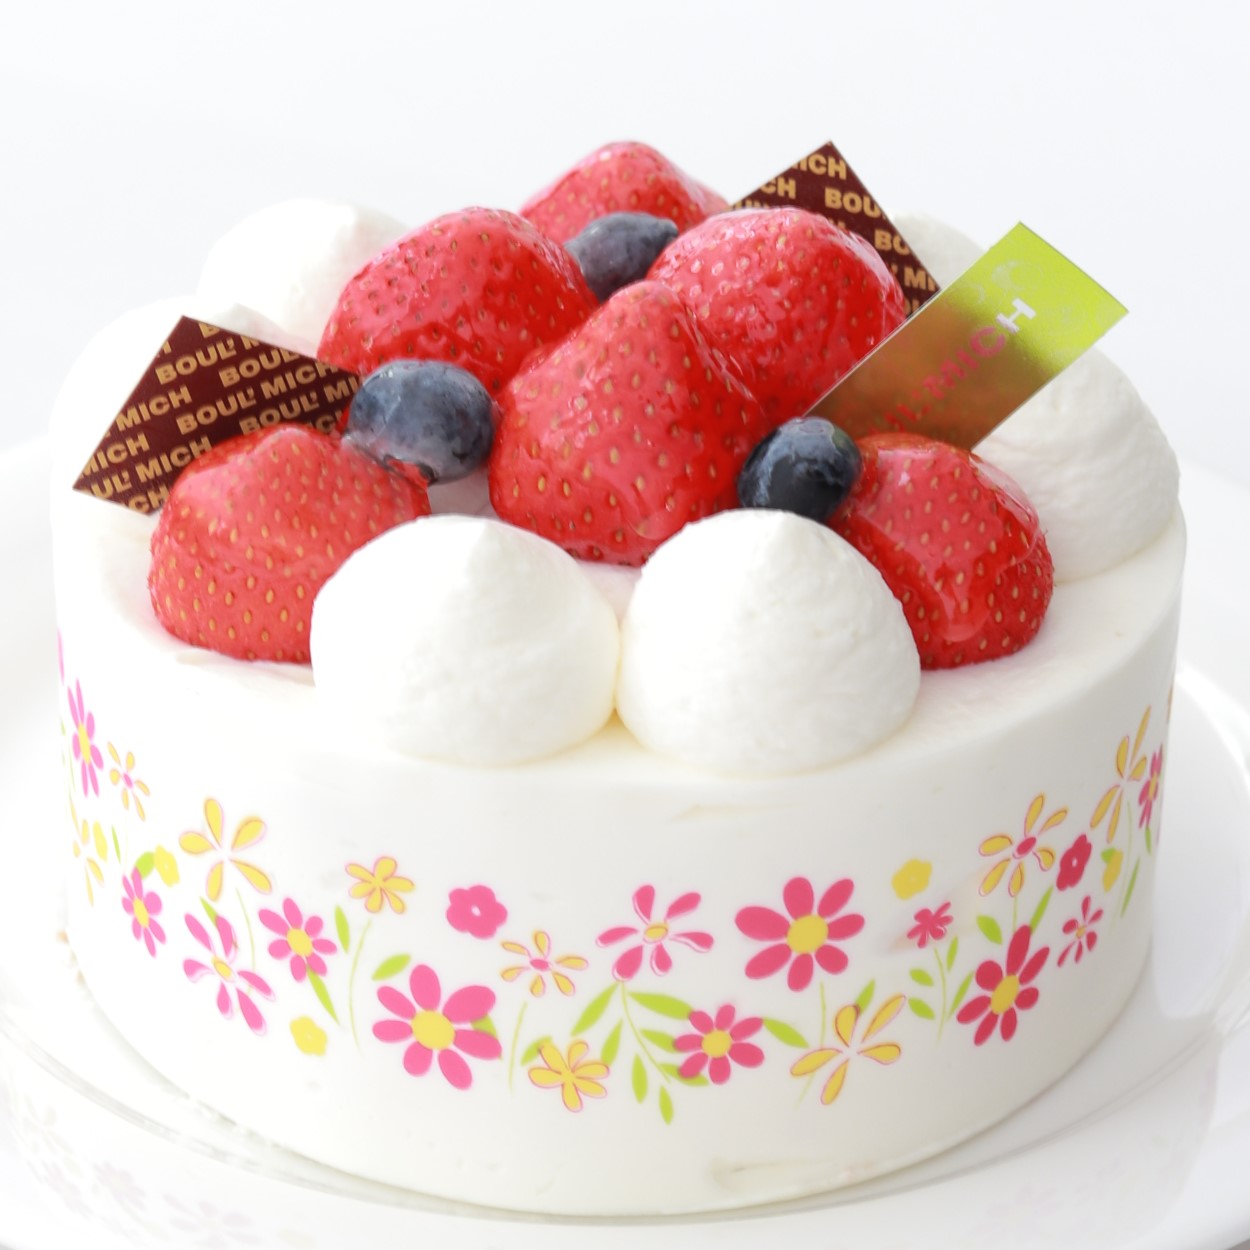 苺ショートケーキ 4号 Jr東日本公式 エキナカの商品が予約できるサービス ネットでエキナカ エキュート赤羽 店頭受取